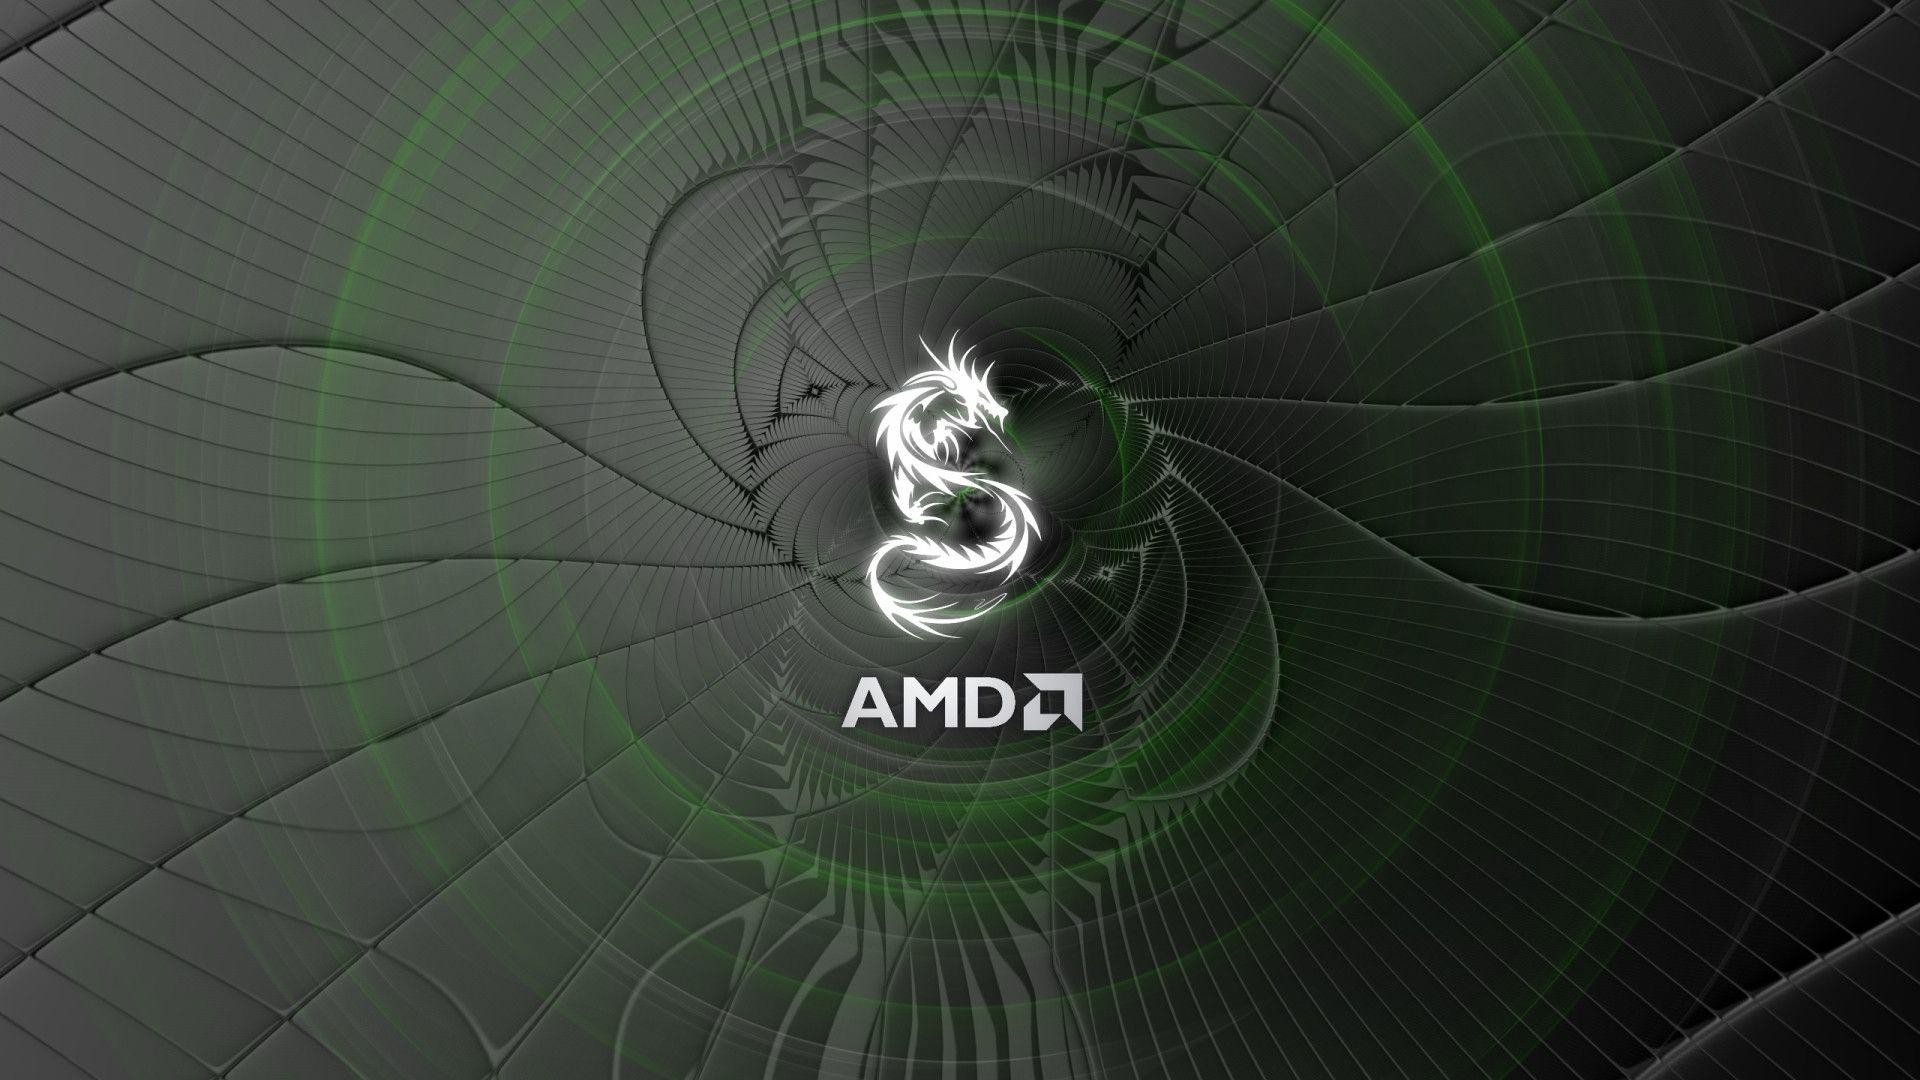 AMD 4K Wallpaper (75+ images)